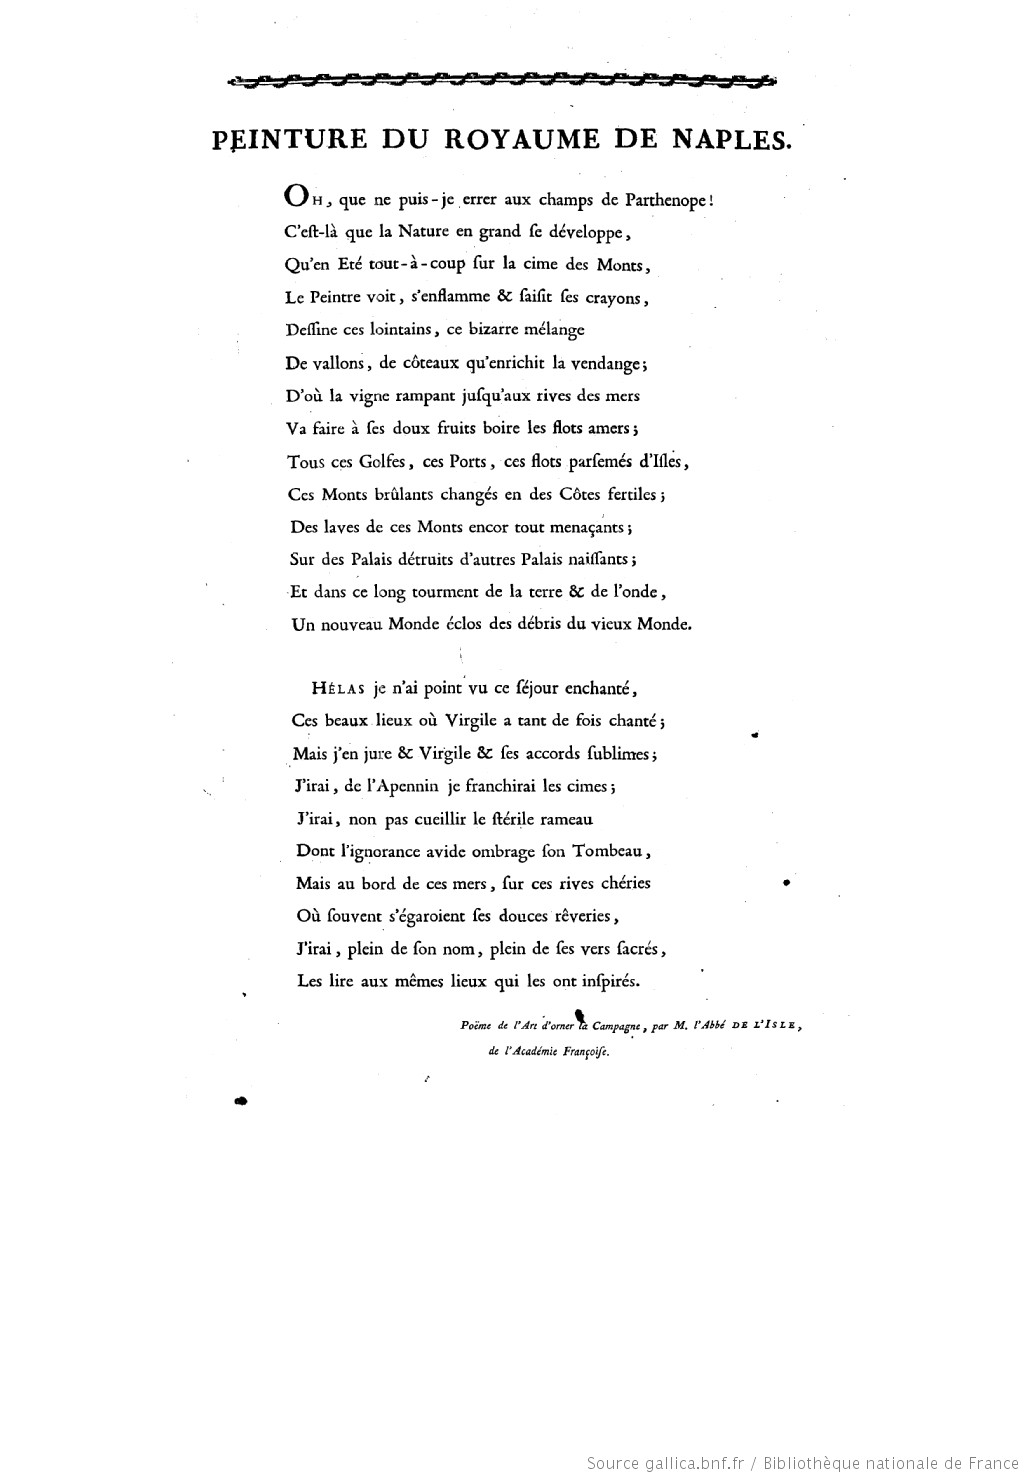 Le Vésuve, décrit par les contemporains du XVIIIe siècle - Page 8 Voyage15